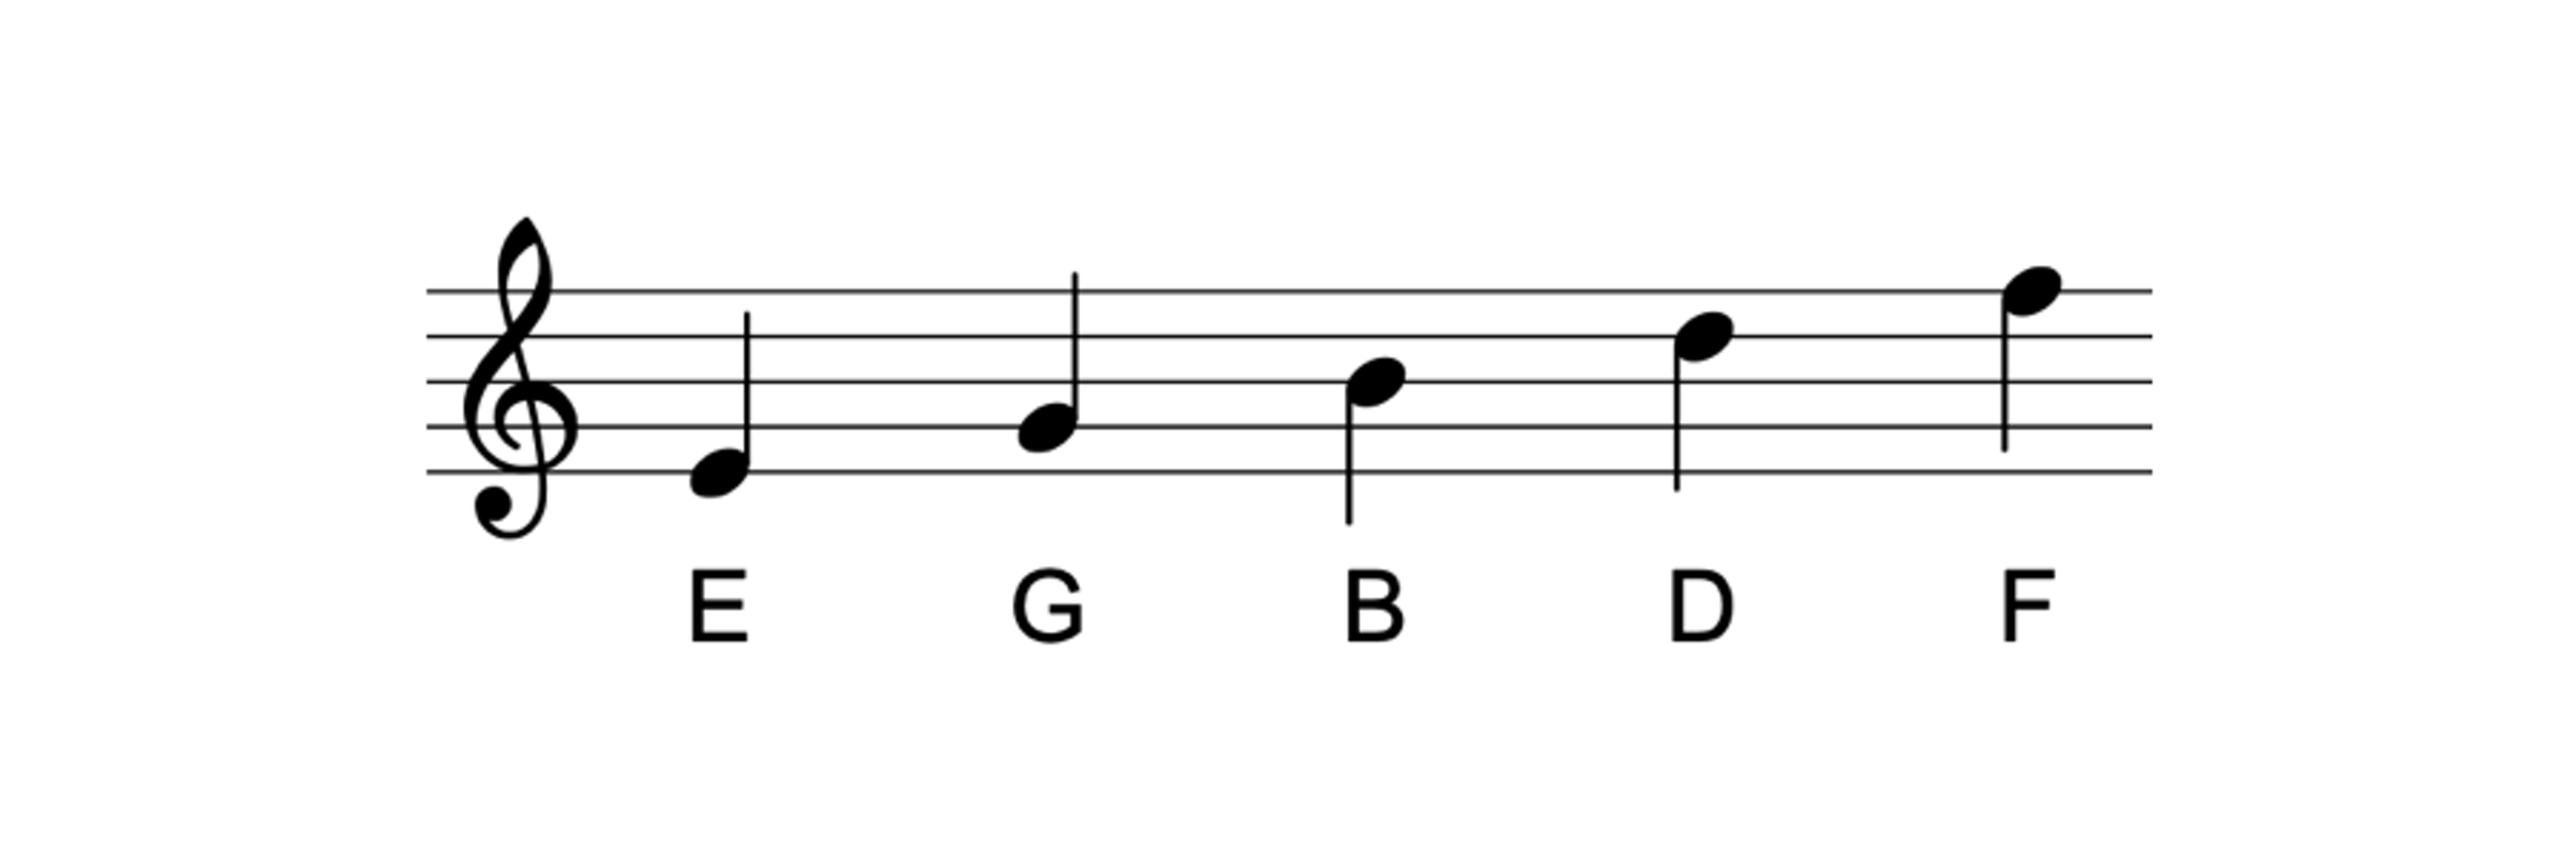 다섯 개의 선 위의 음들: 미(E), 솔(G), 시(B), 레(D), 파(F)